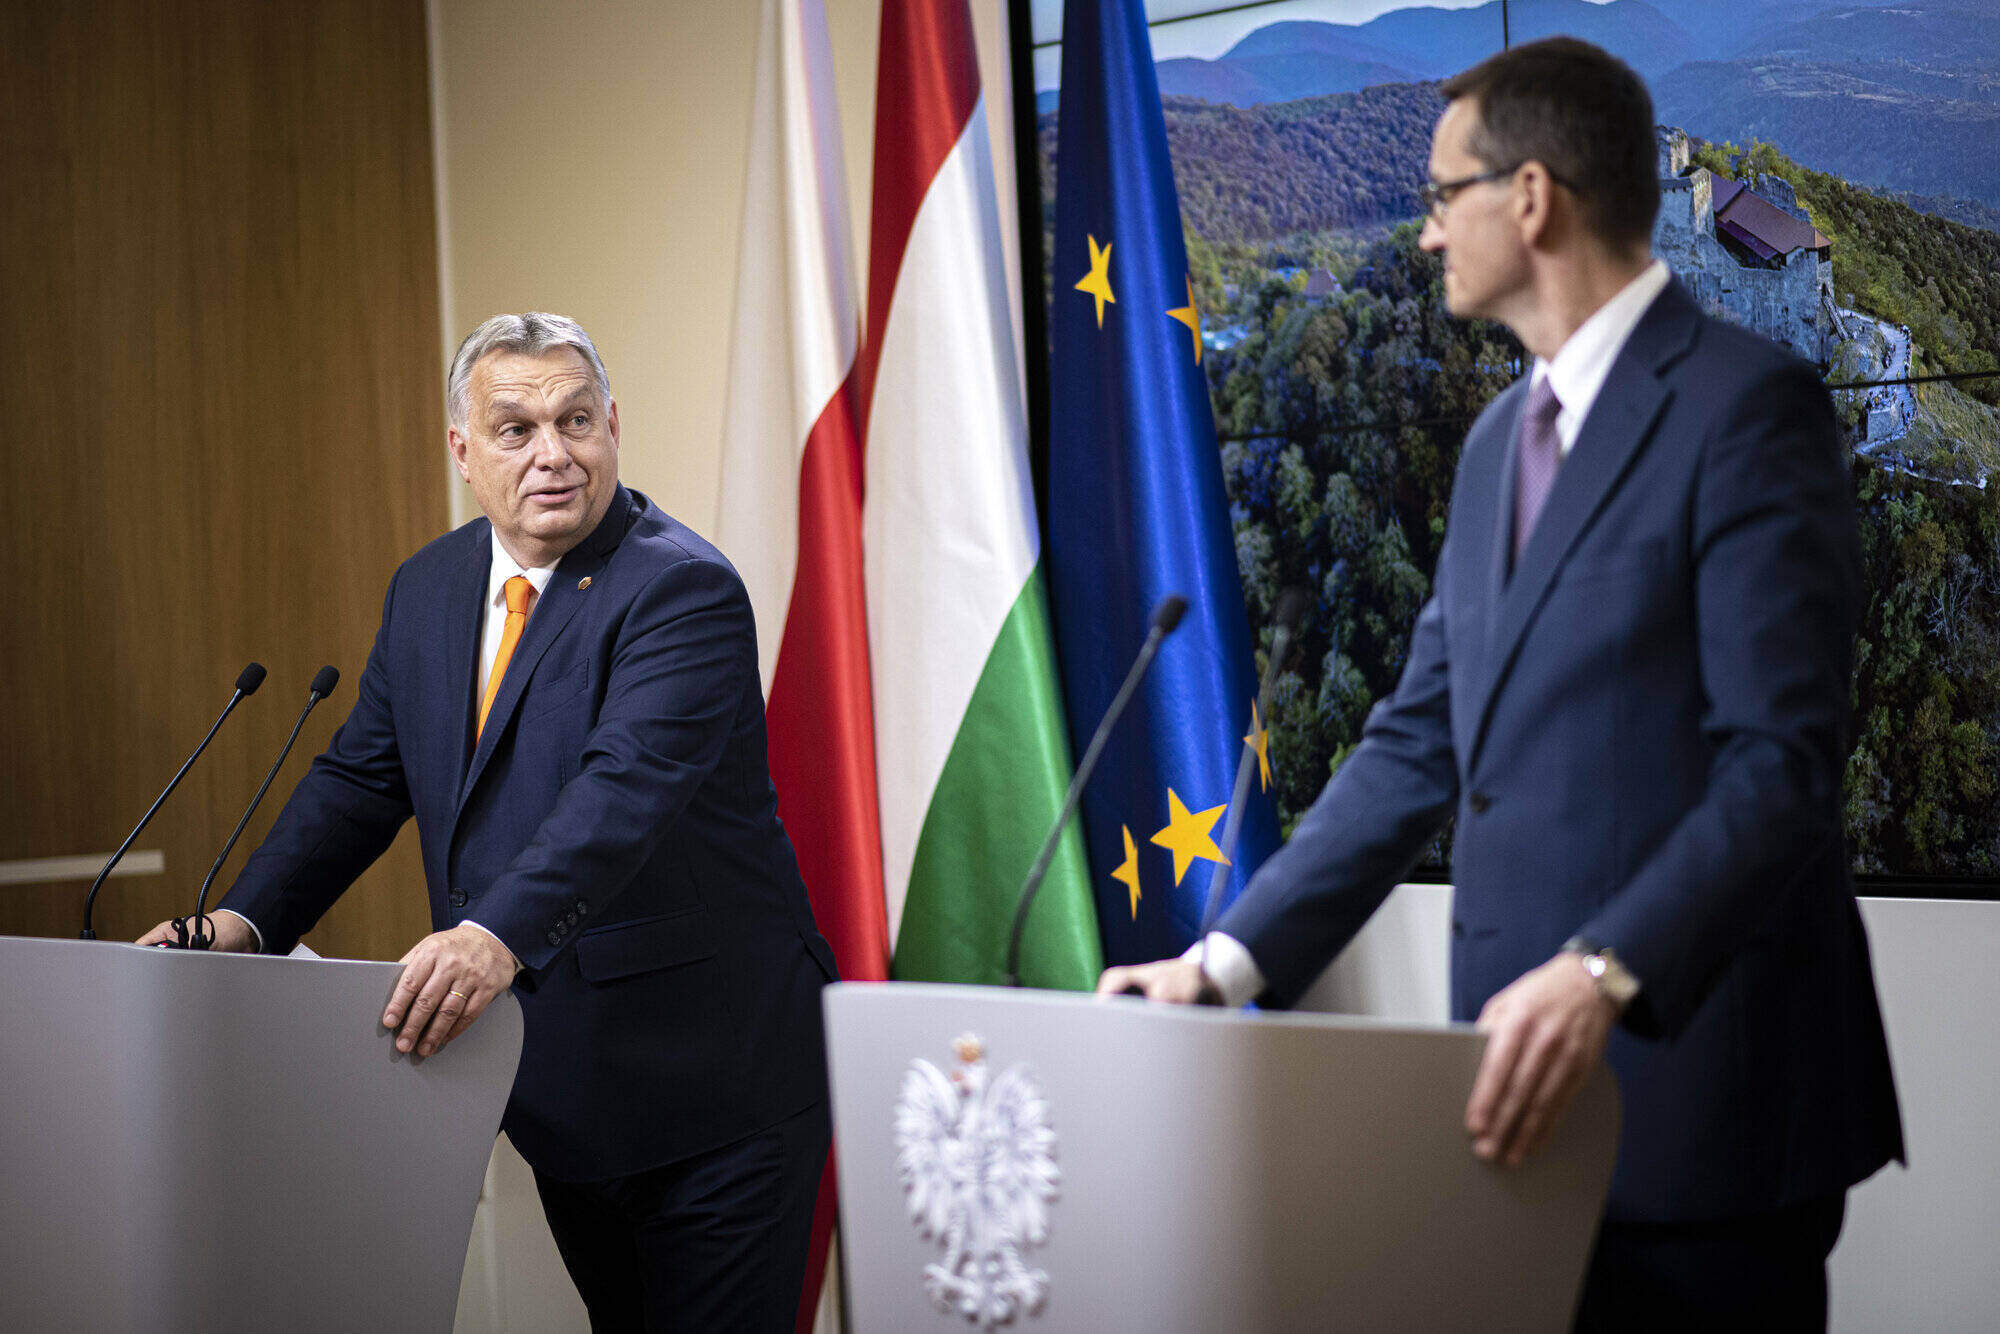 orbán morawiecki eu budget veto